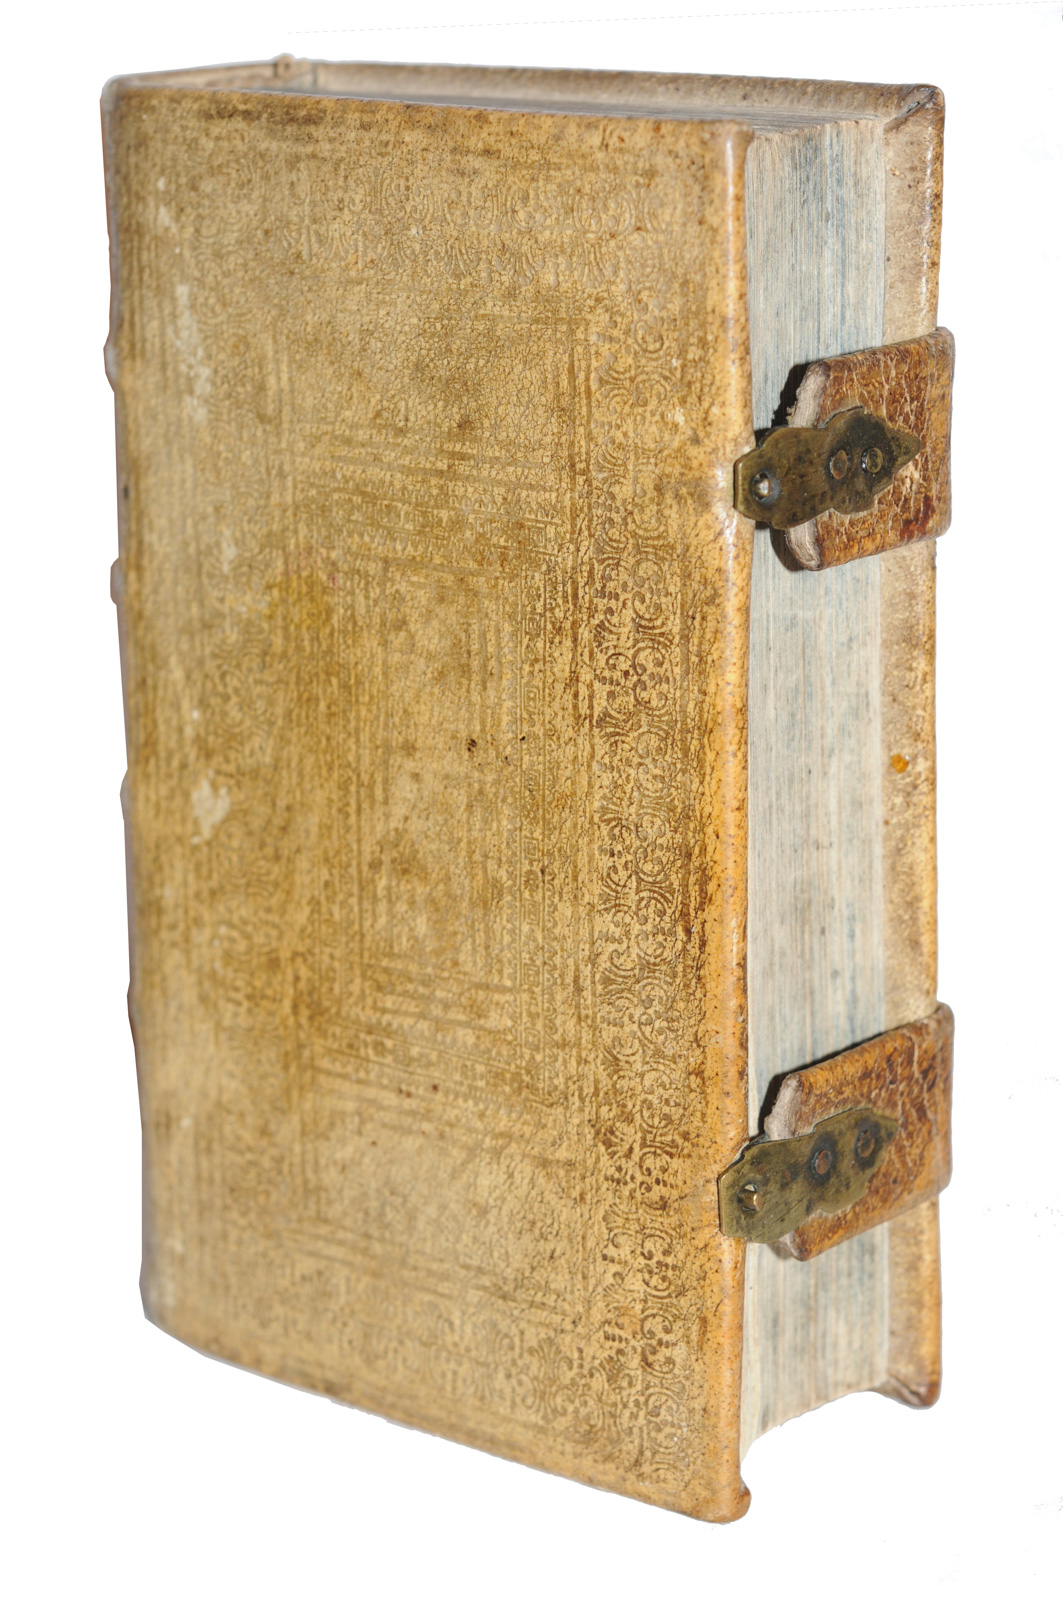 Manuale Selectissimarum Benedictionum, Conjurationum, Exorcismorum, Absolutionum, Rituum ad commodiorem usum parochorum, Ex Ducali Campidonensi, Stadler, 1750